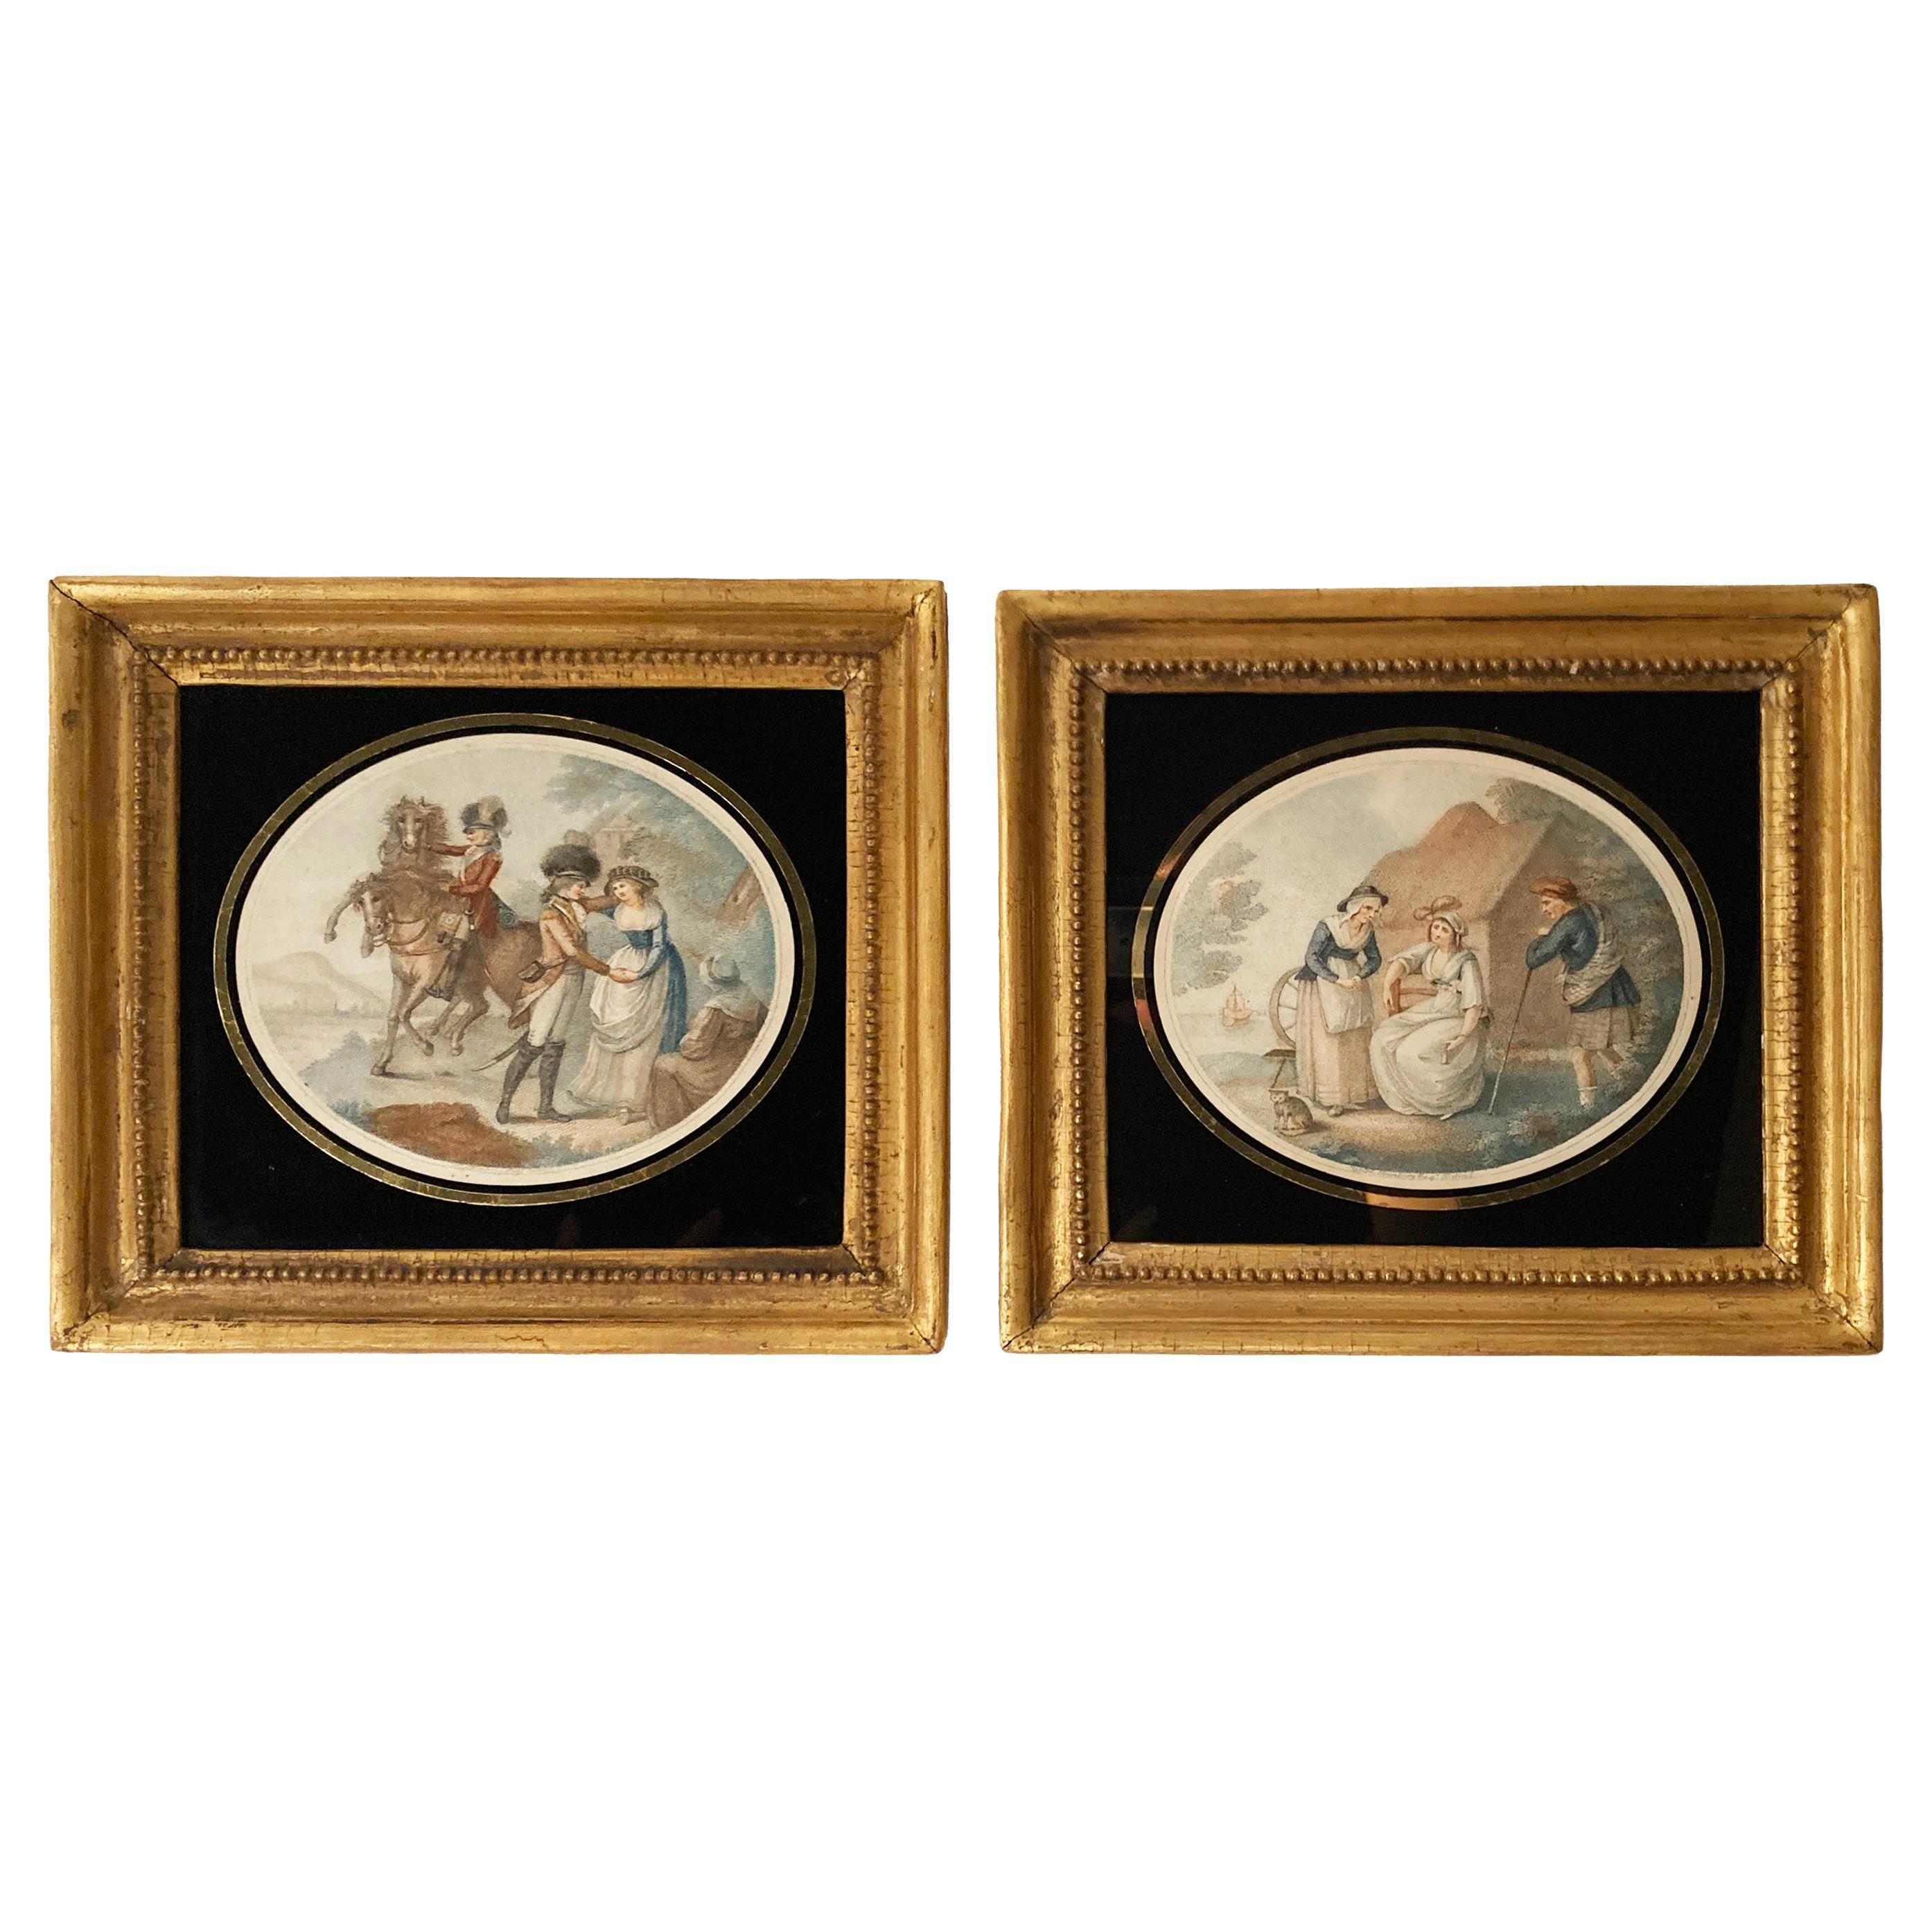 Farbdruck-Stiche des späten 18. Jahrhunderts nach Originalen des Künstlers Henry William